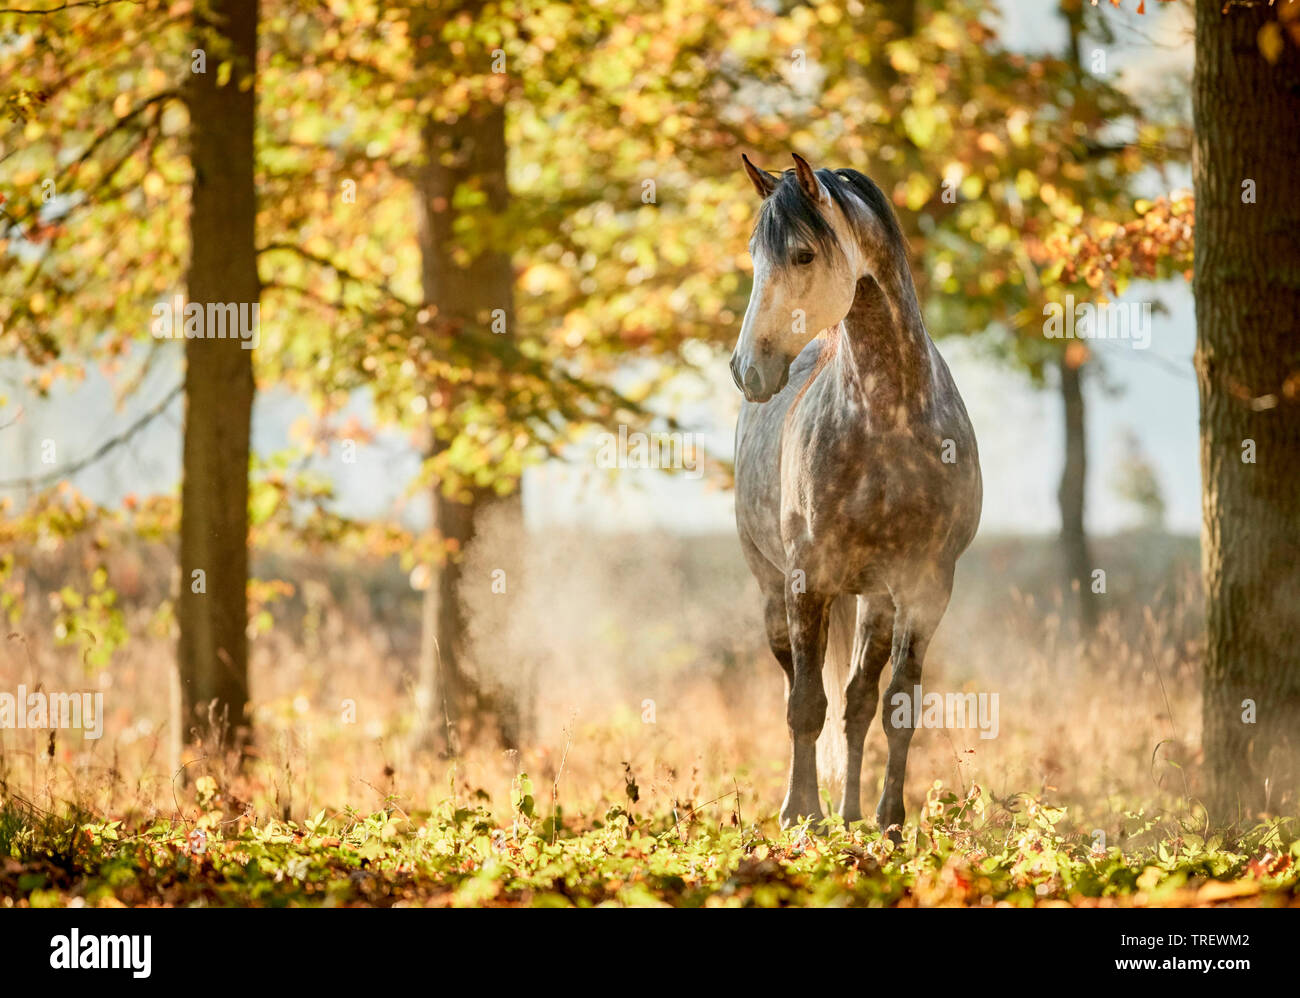 Cheval Espagnol pur, andalou. Gris pommelé des profils debout dans une forêt en automne. Allemagne Banque D'Images